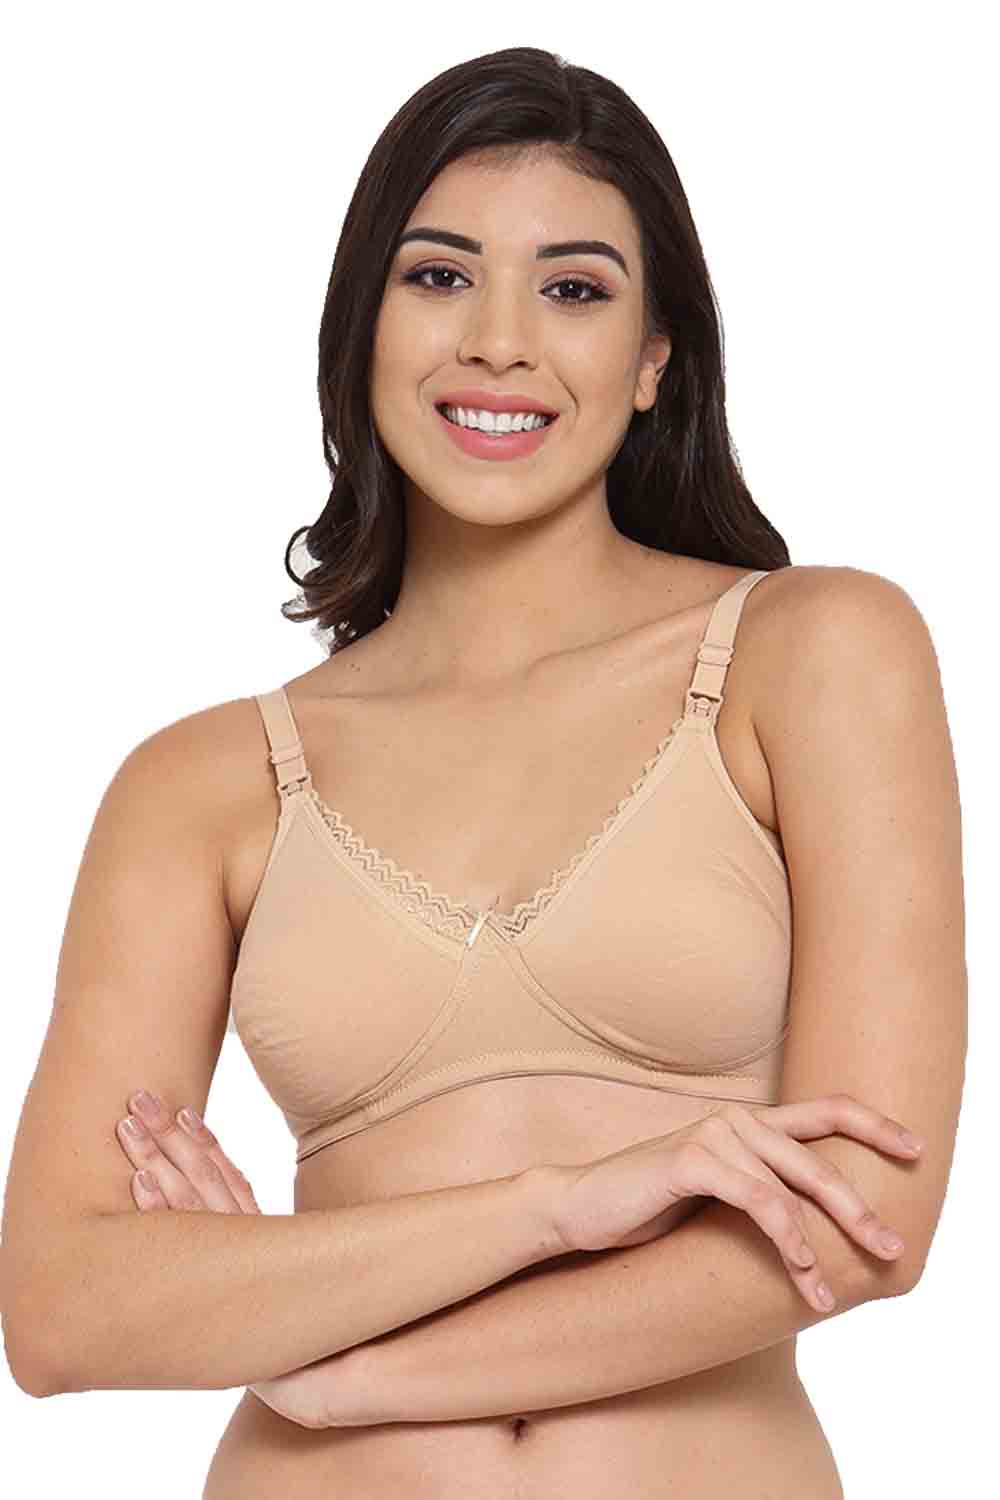 Women's Soft Bras Size 38D, Underwear for Women